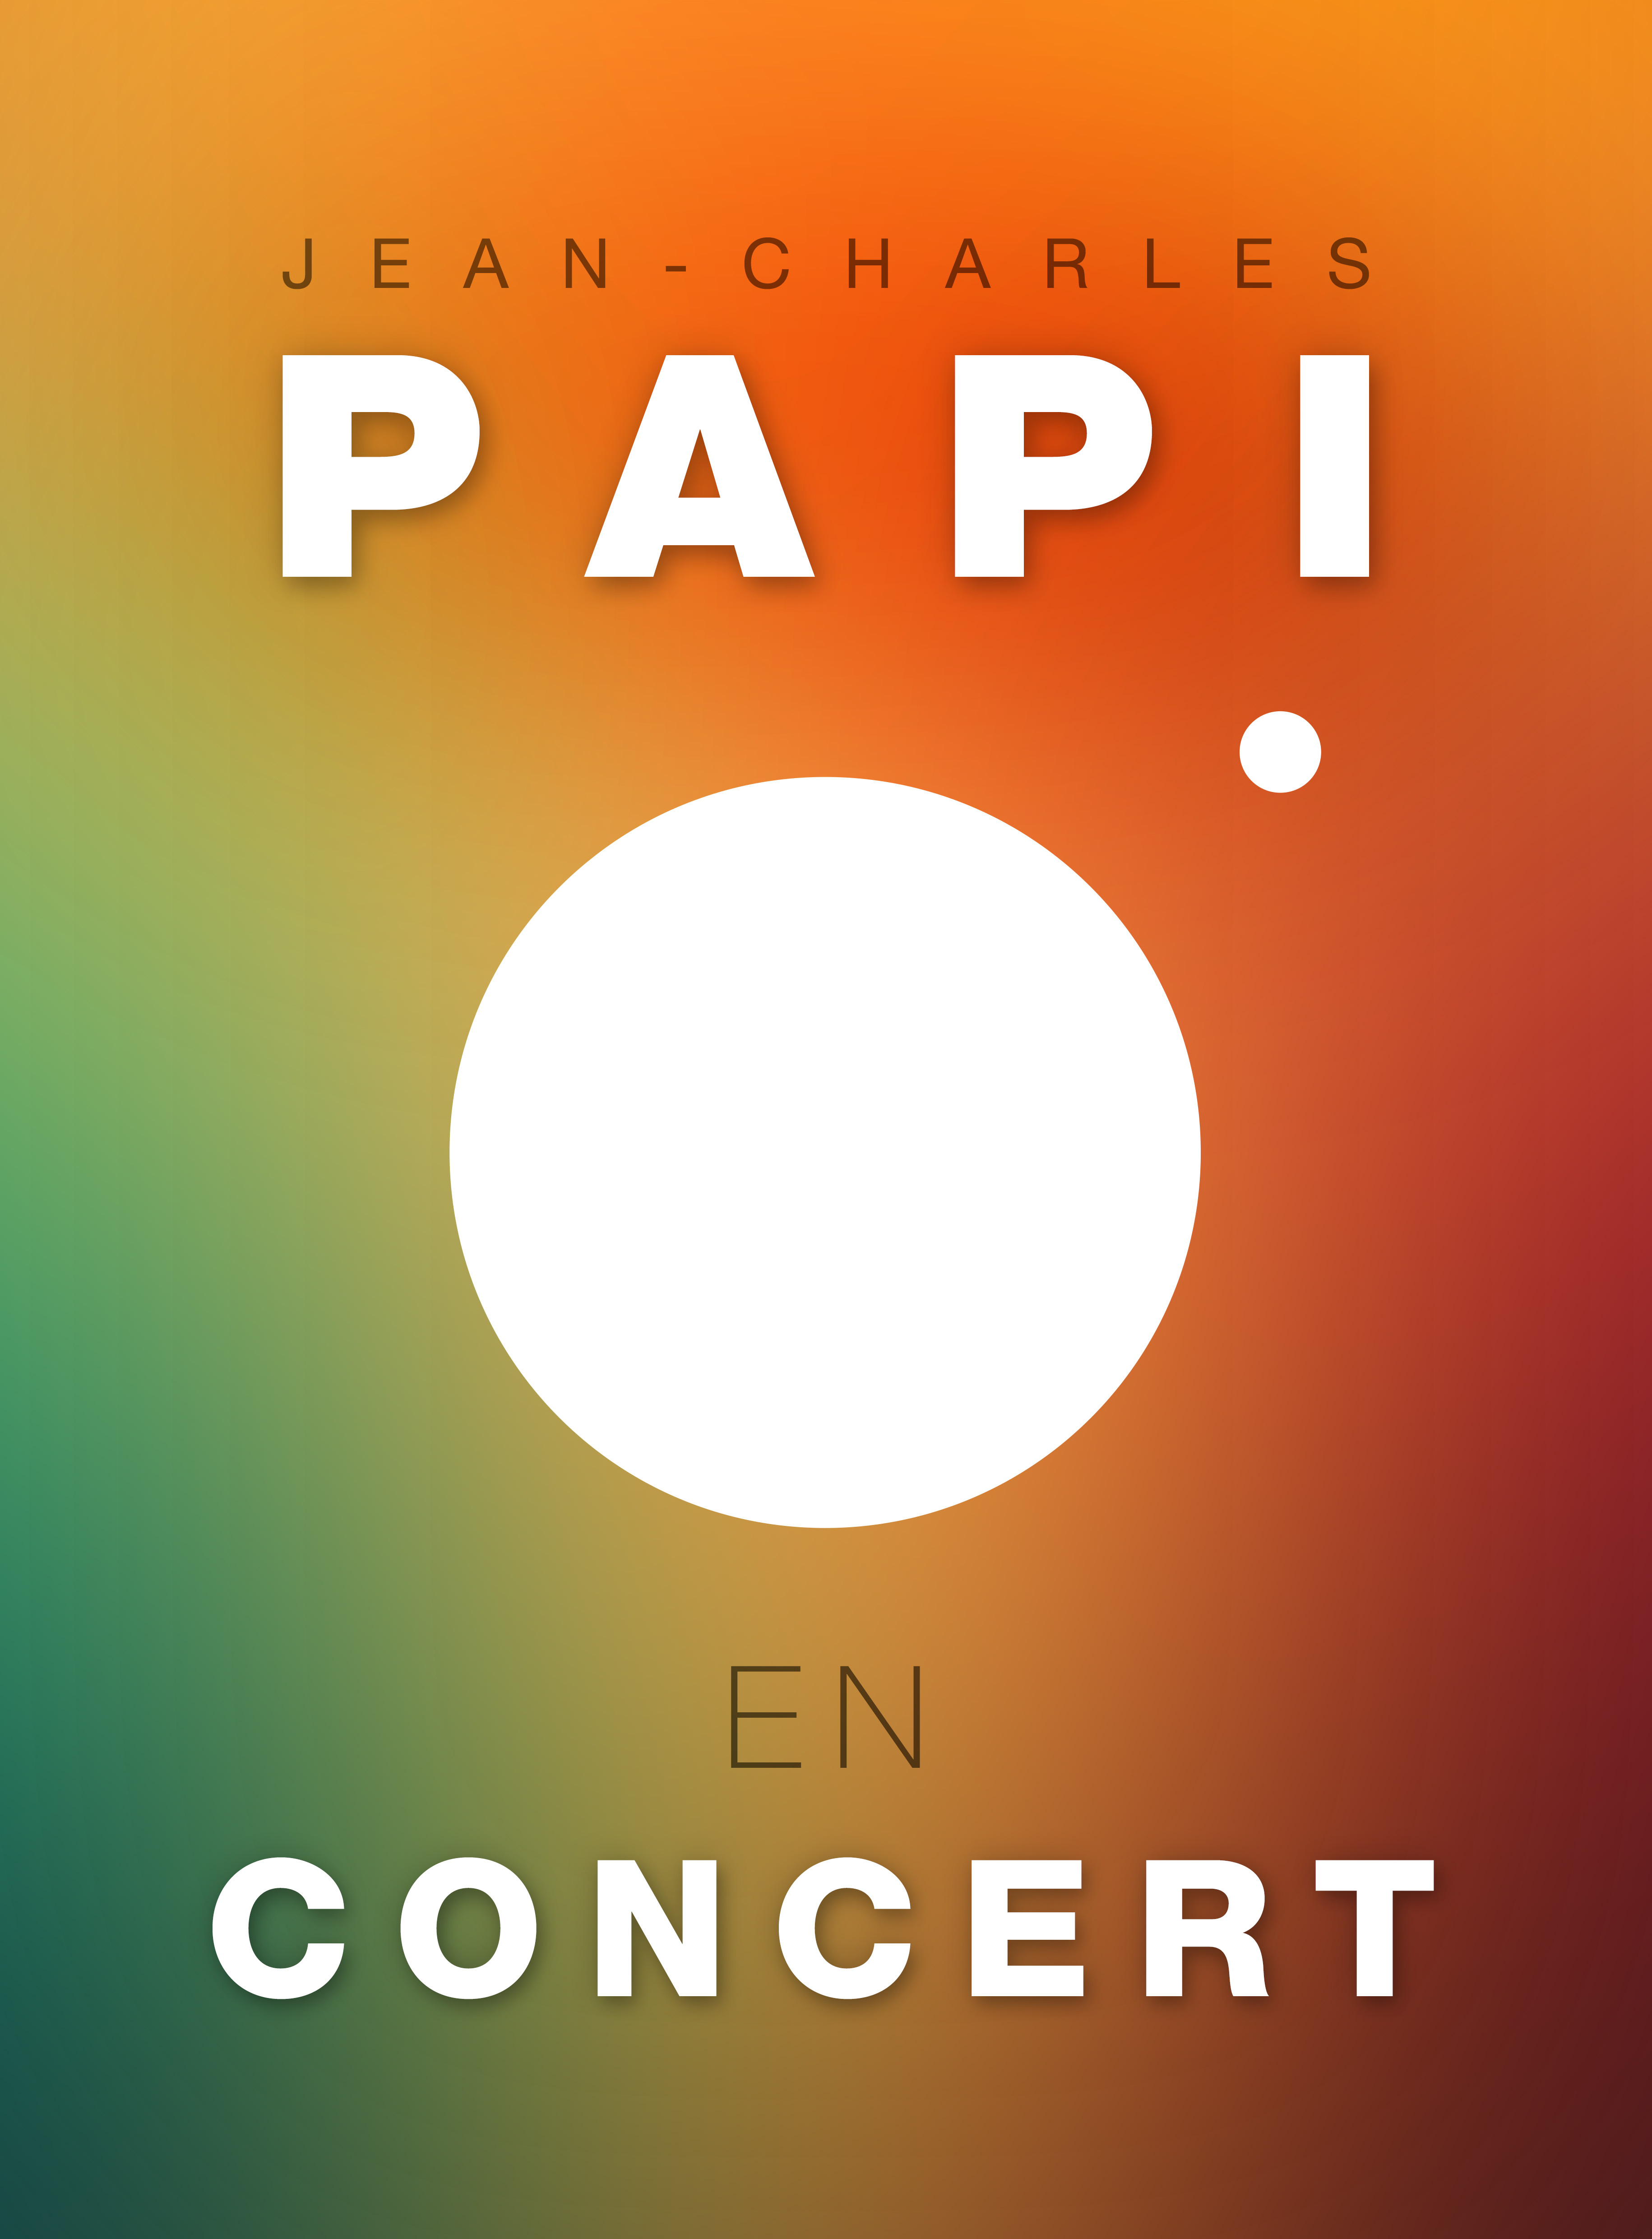 Jean Charles PAPI en concert